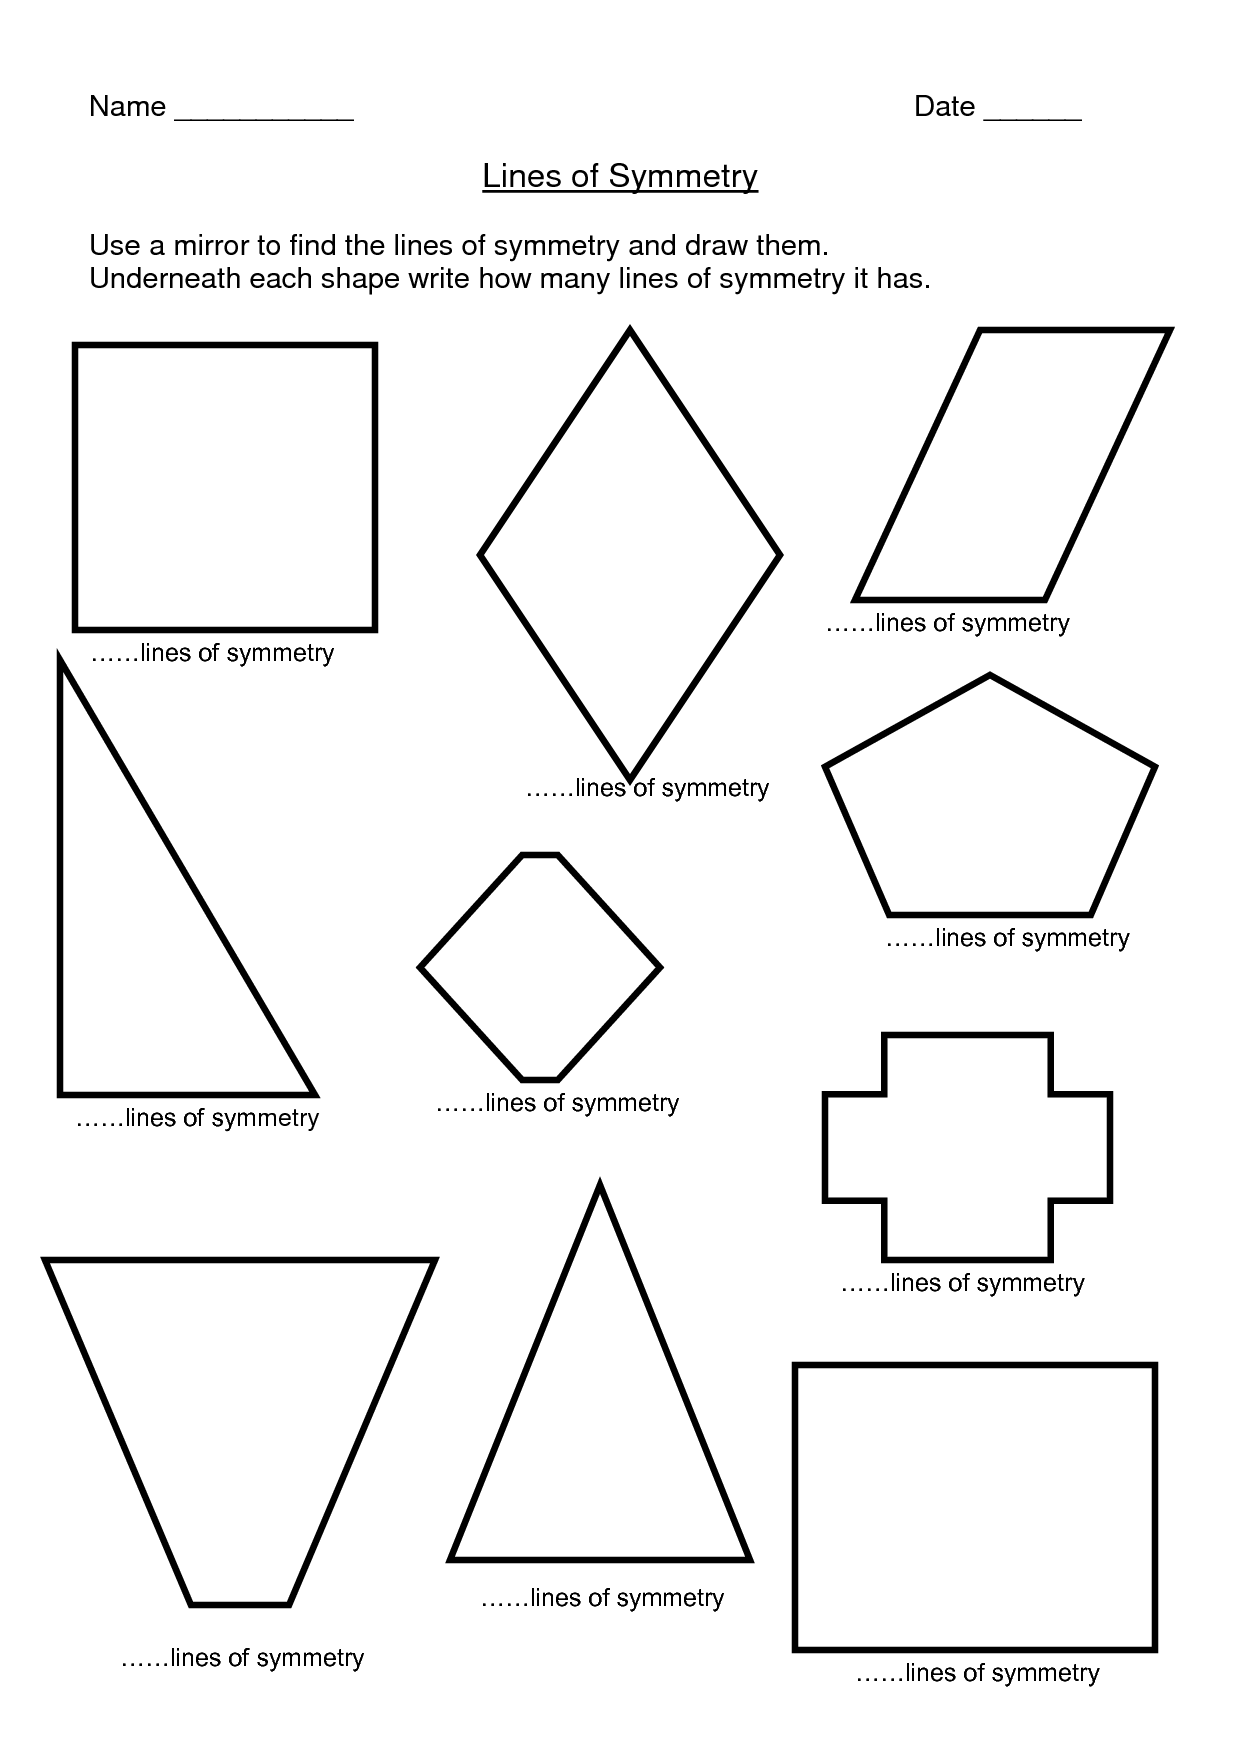 shapes-for-symmetry-worksheet-symmetry-worksheets-shape-worksheets